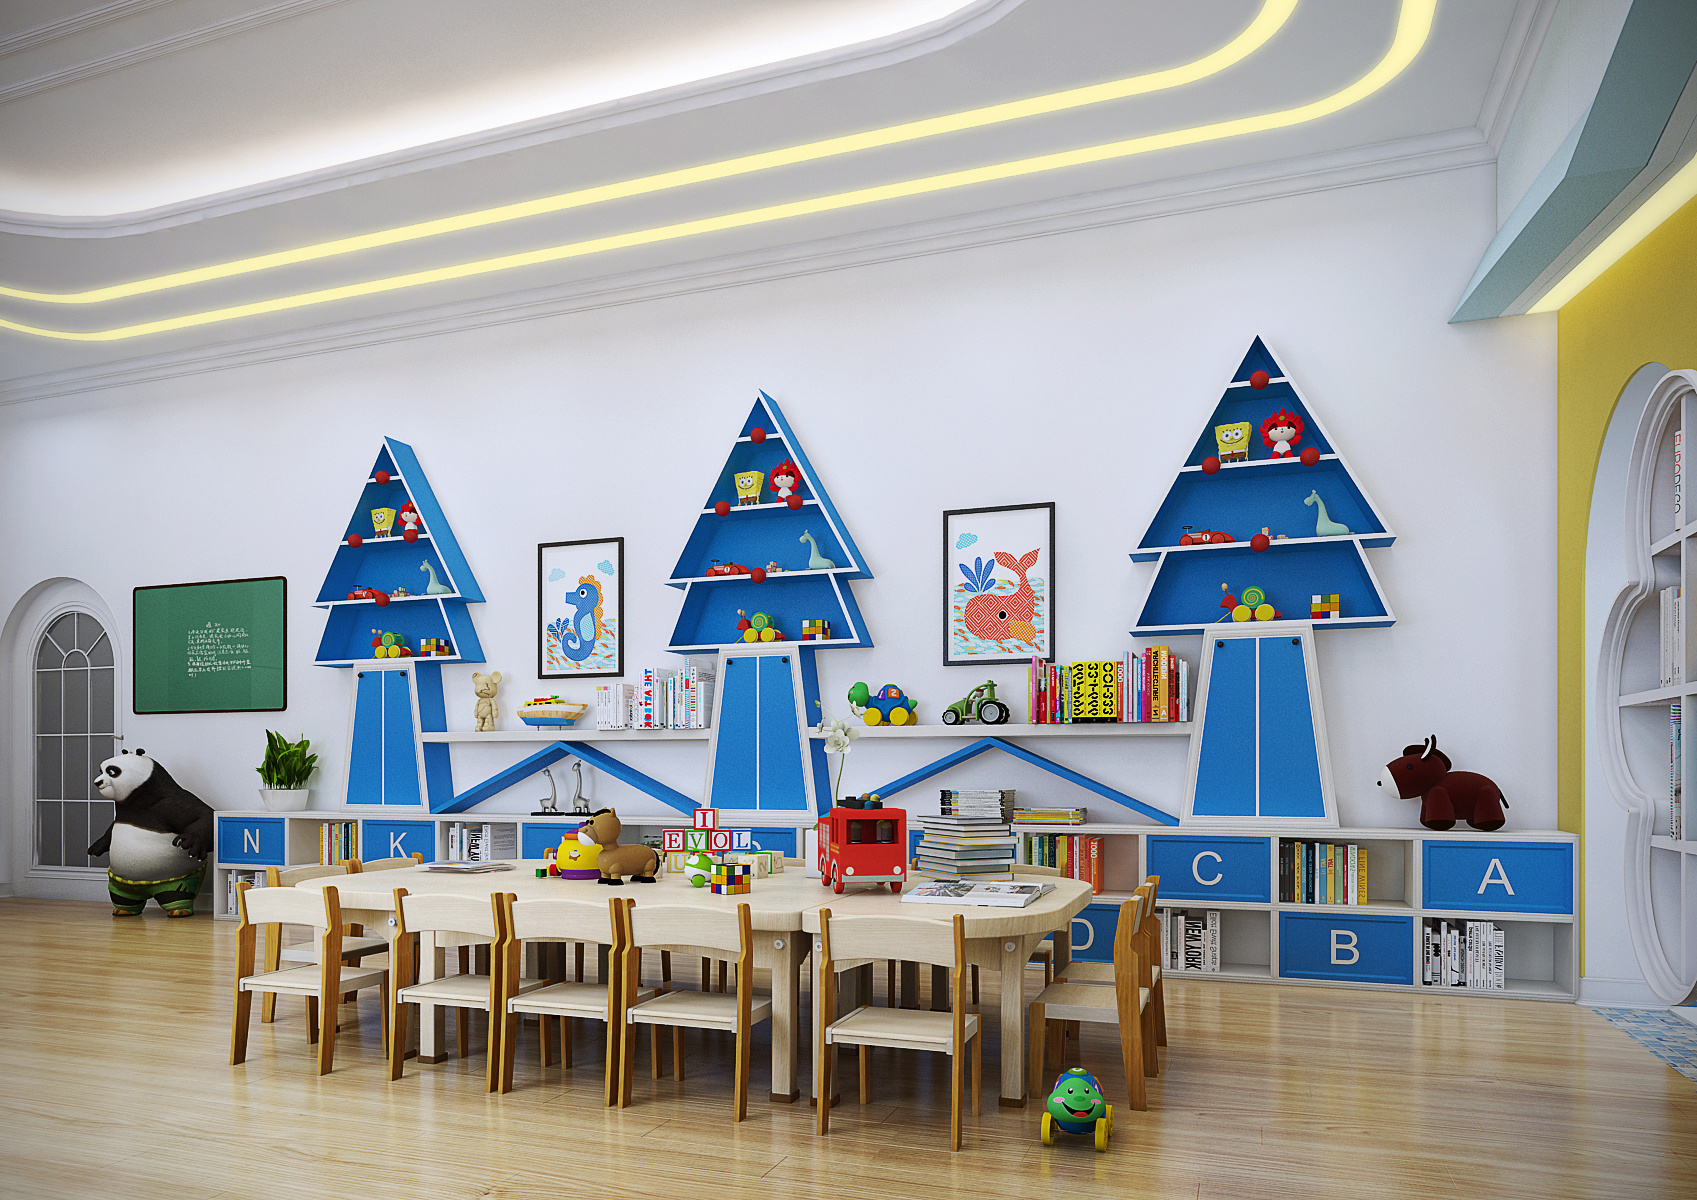 现代幼儿园教室环境布置 – 设计本装修效果图